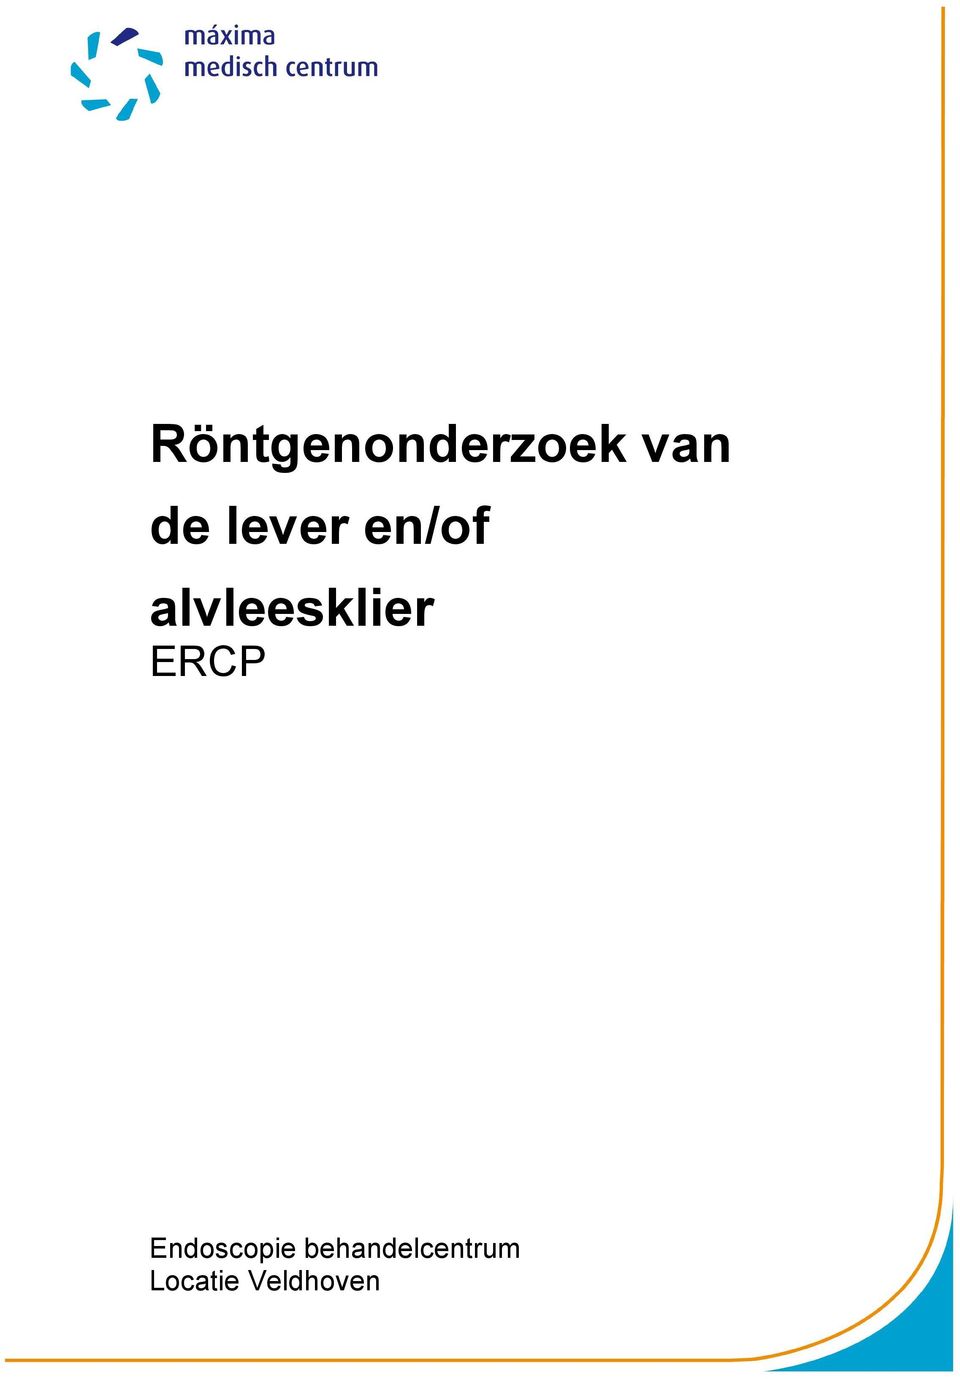 ERCP Endoscopie